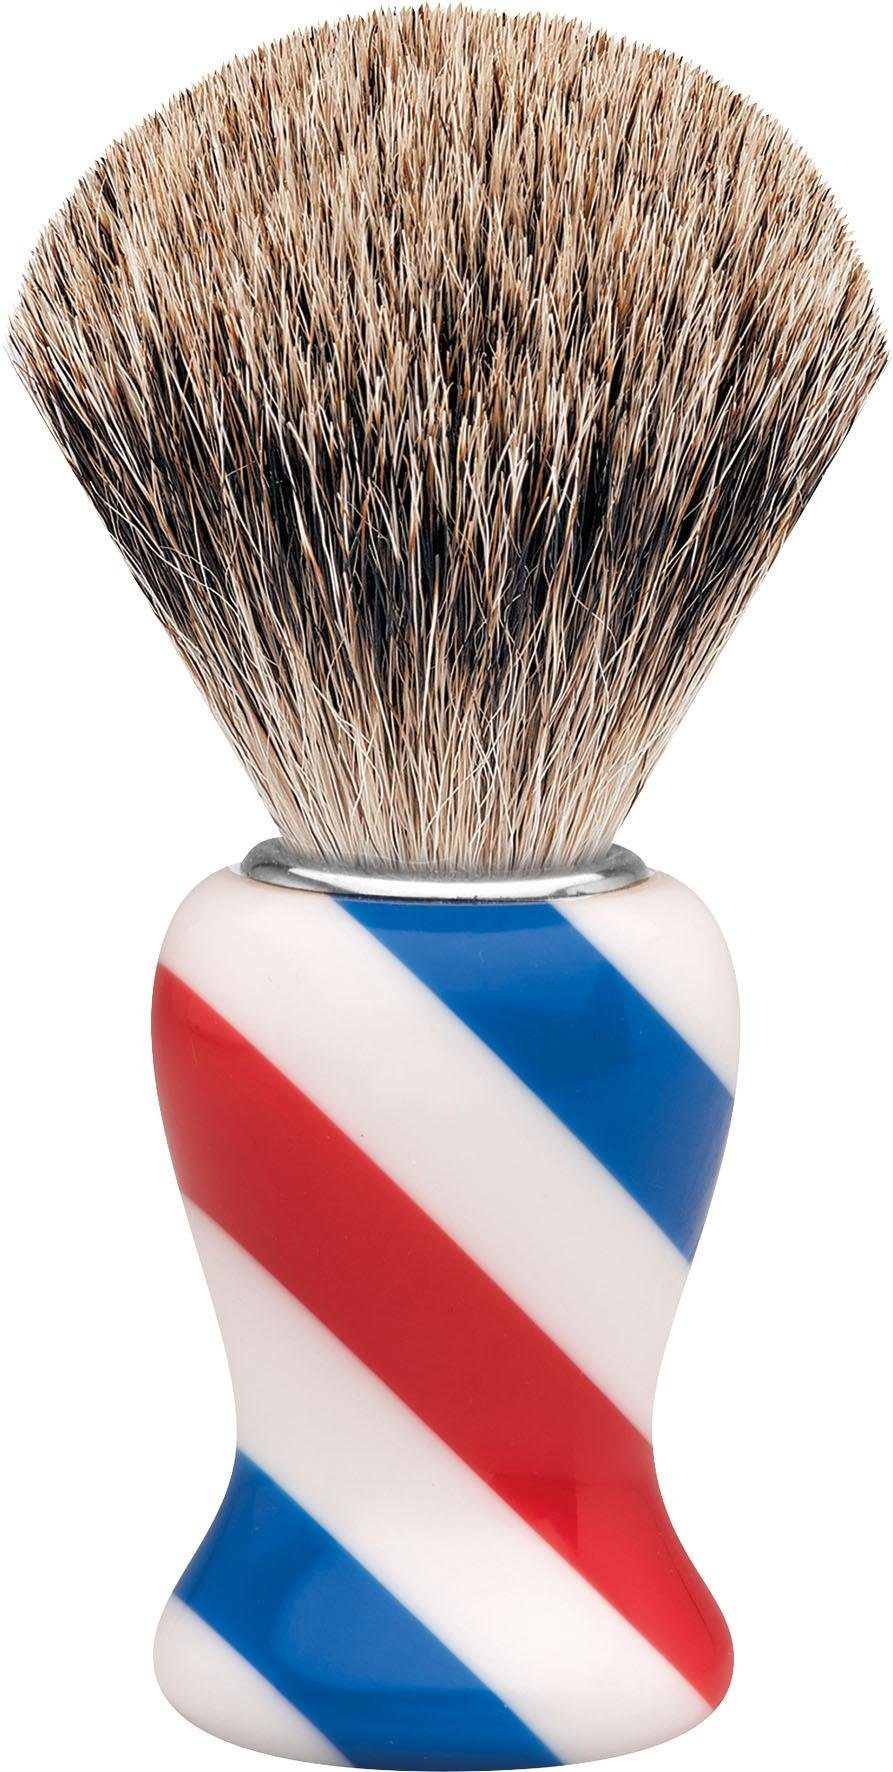 Rasierpinsel M, Barbershop Design/Stripes Dachshaar, ERBE